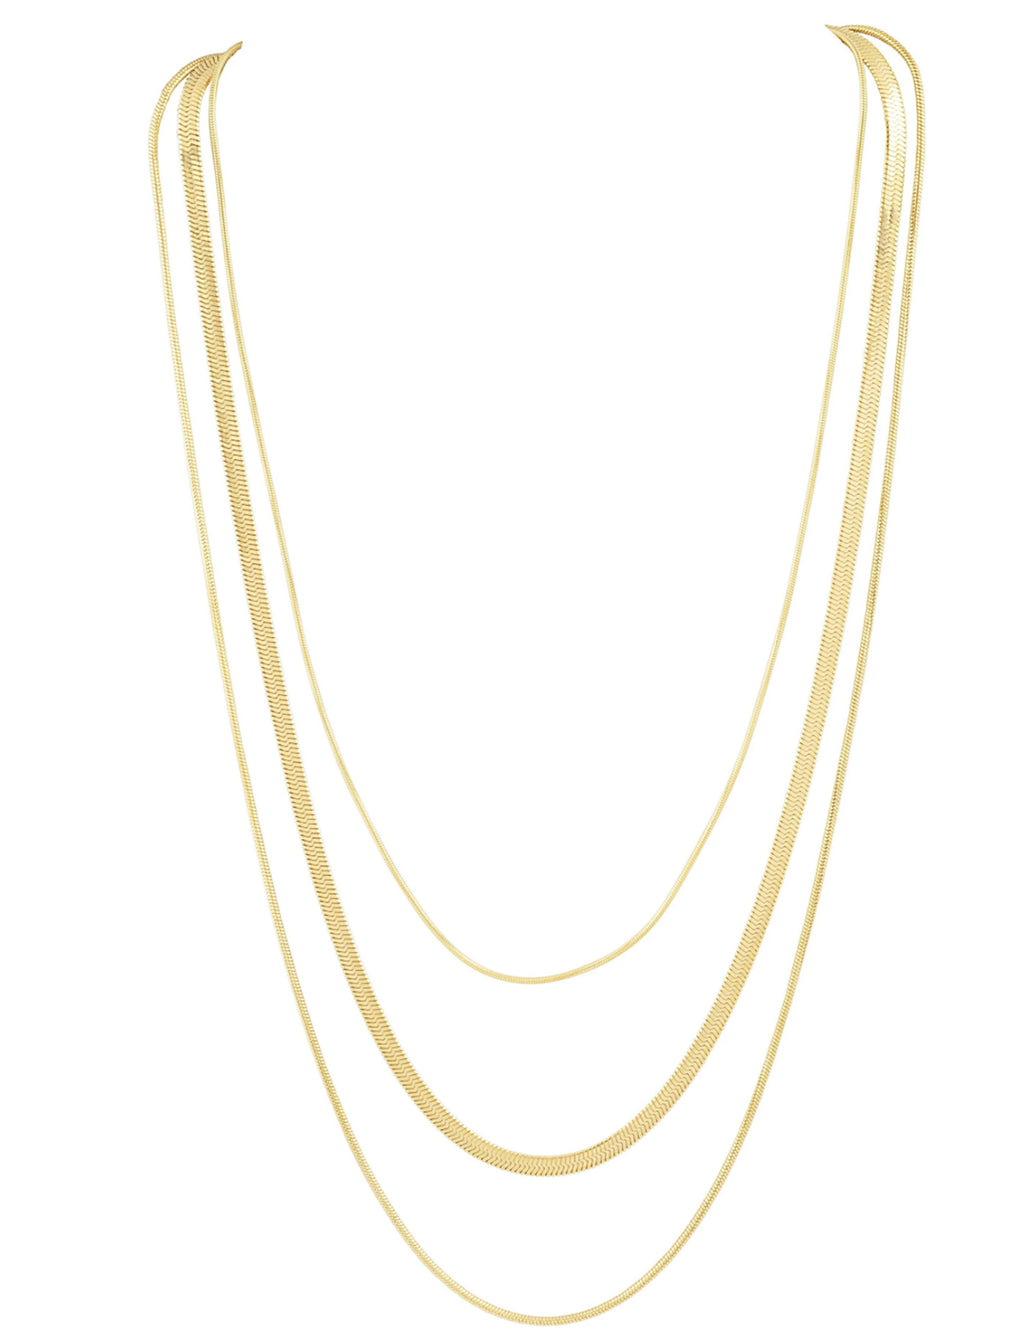 Rio Multi Chain Necklace in Gold